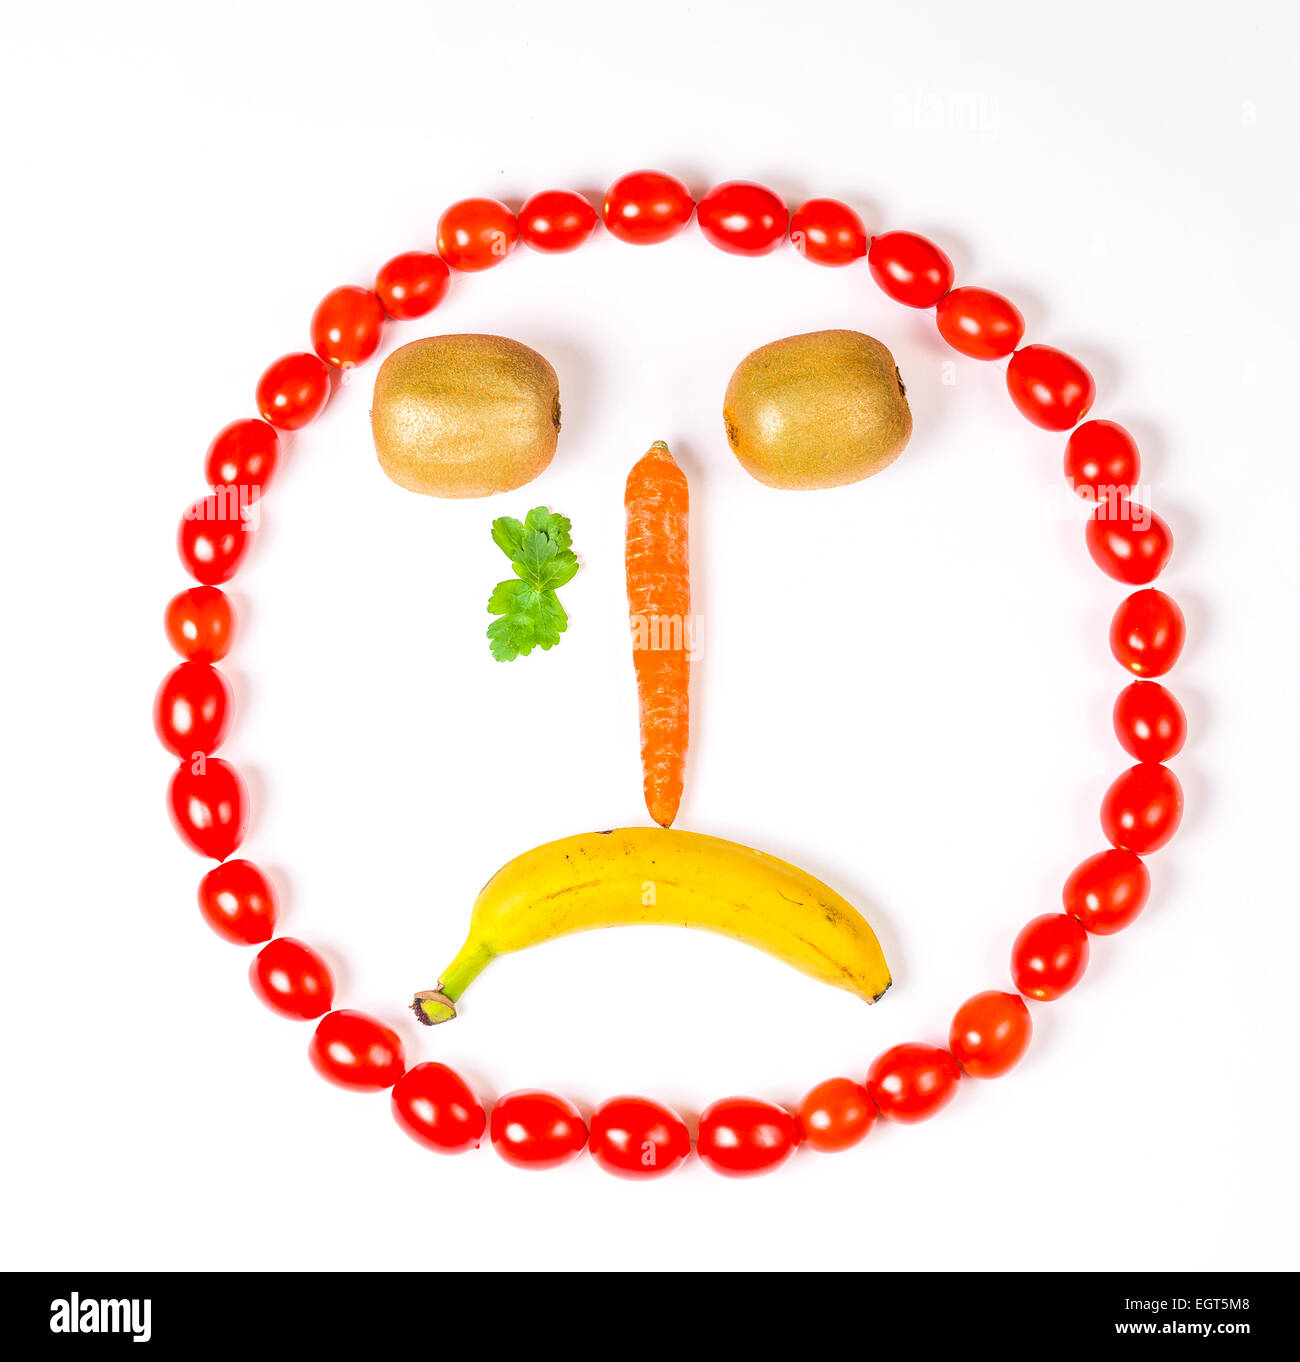 Questo grido smiley è reso wirh carota,kiwi,pomodori ciliegia e banana Foto Stock